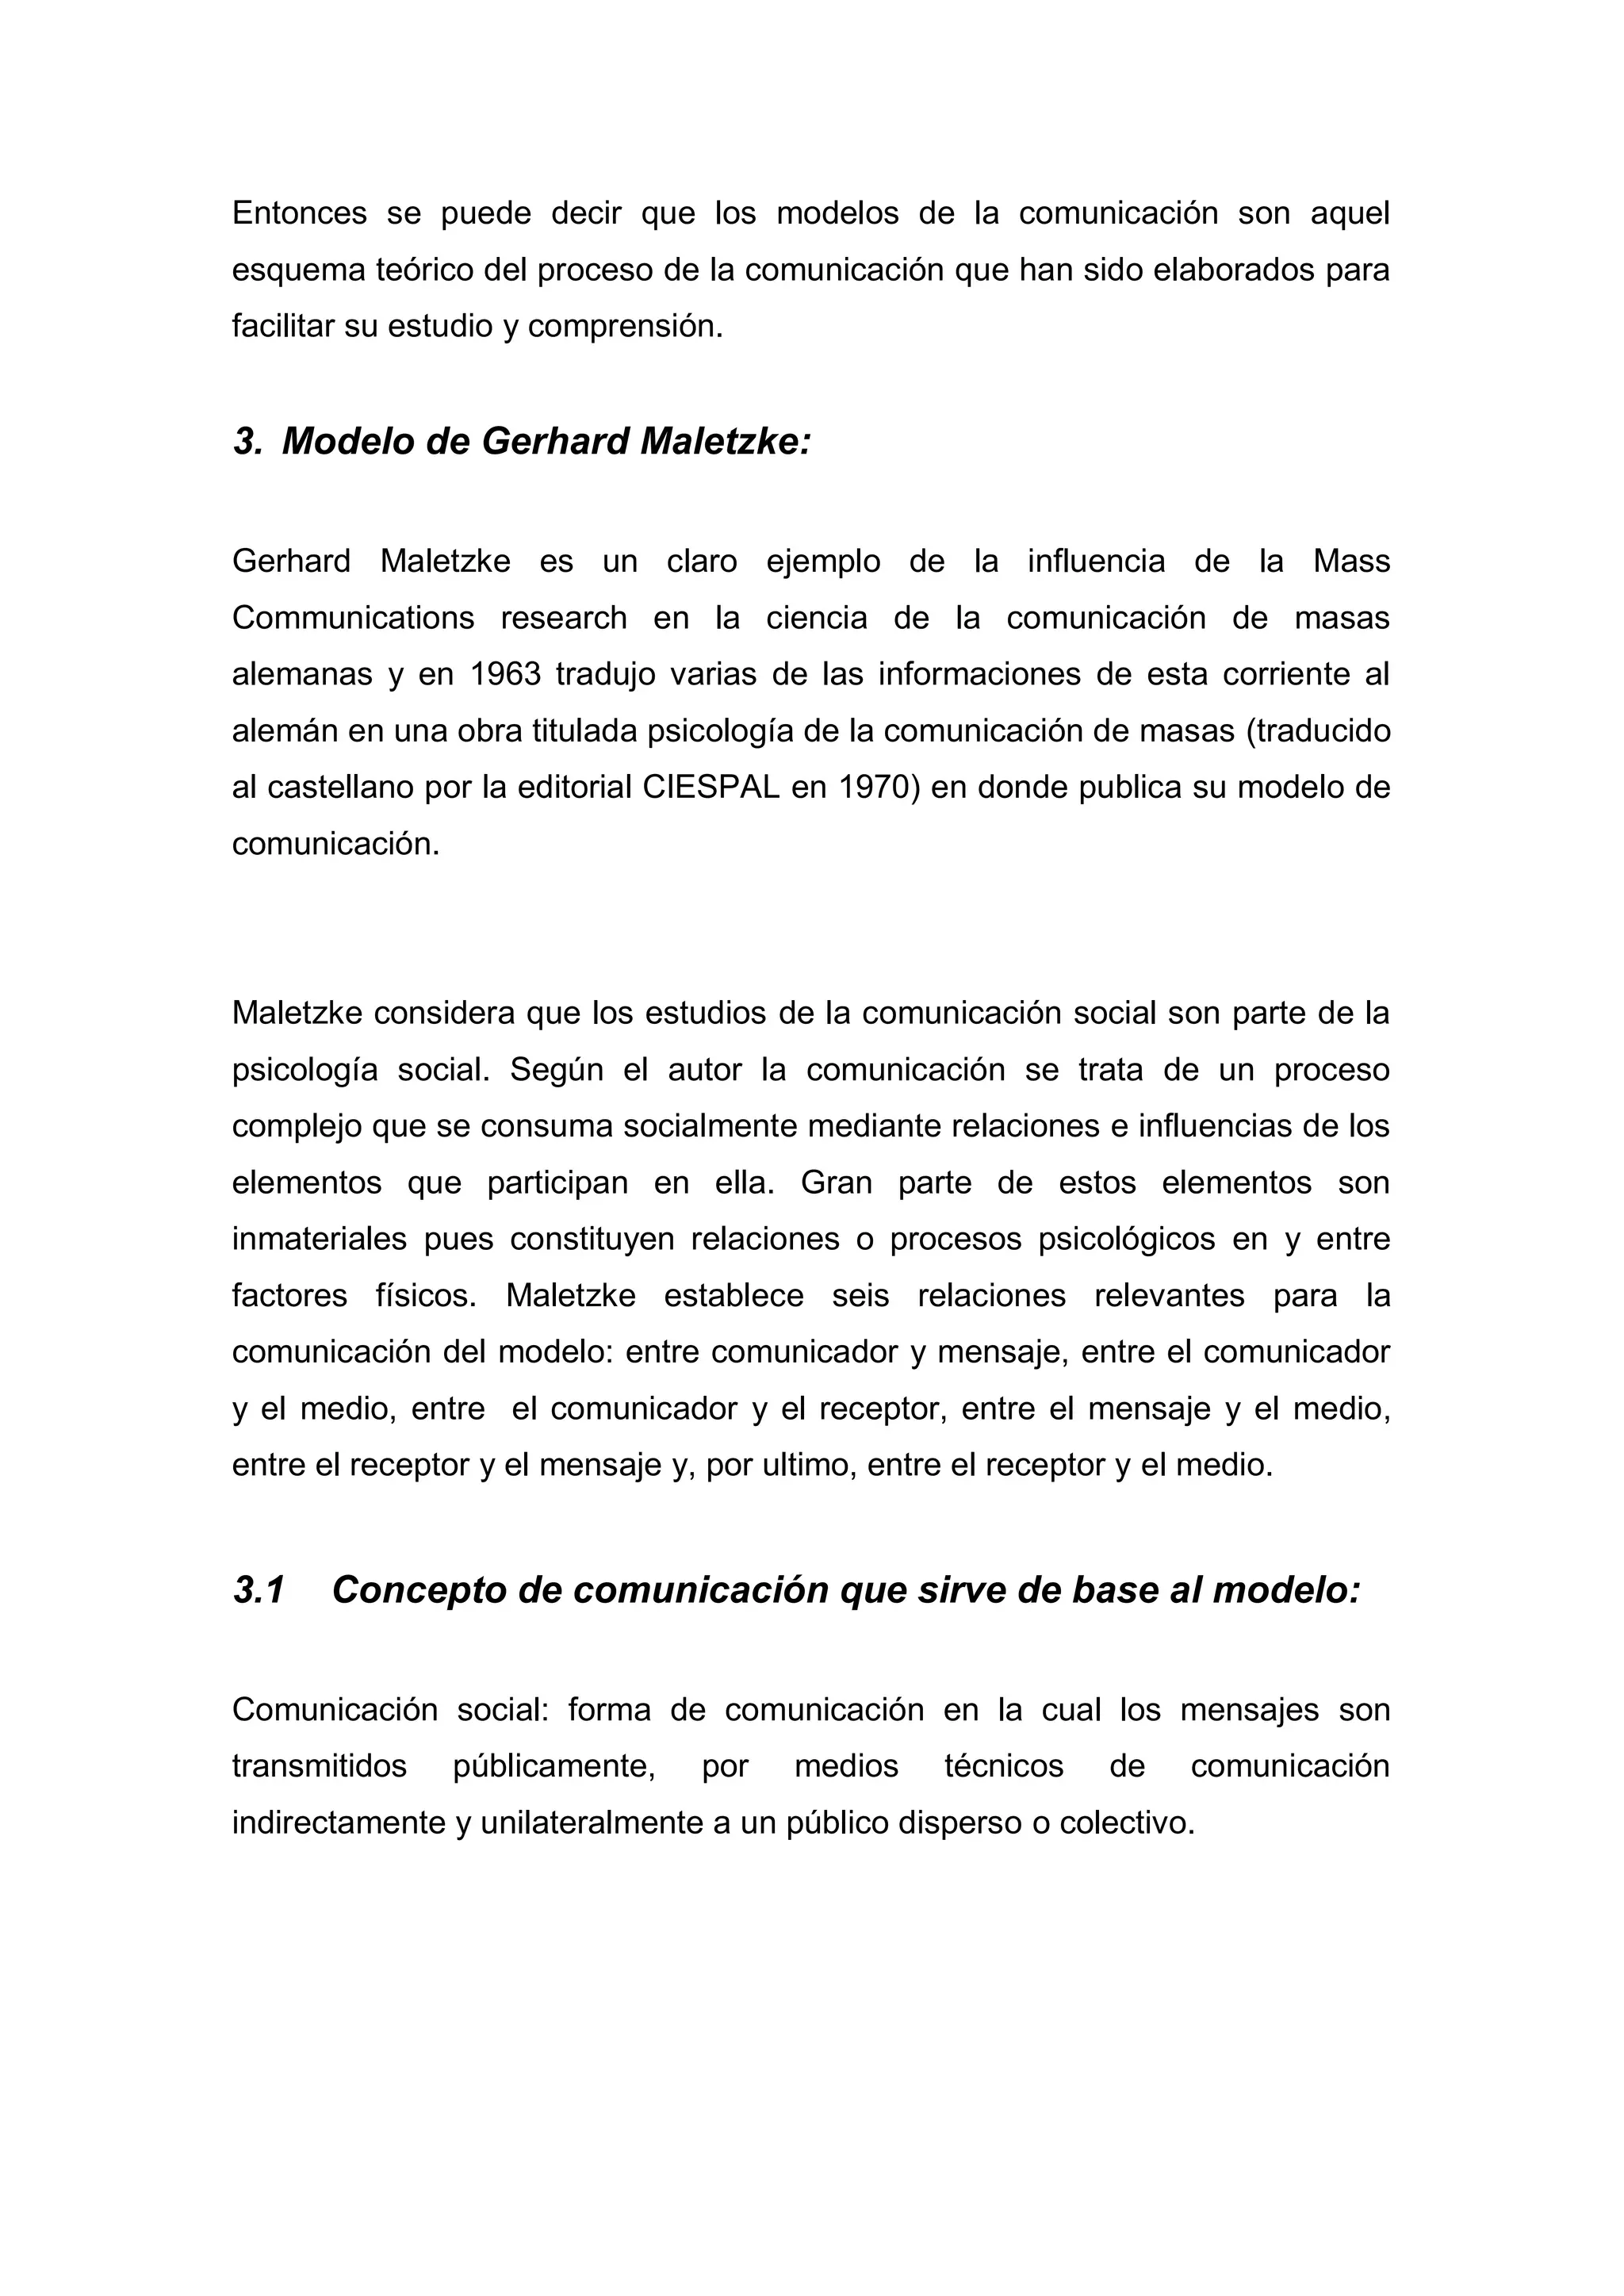 Modelo de comunicación Maletzke - Teoría de la Comunicación